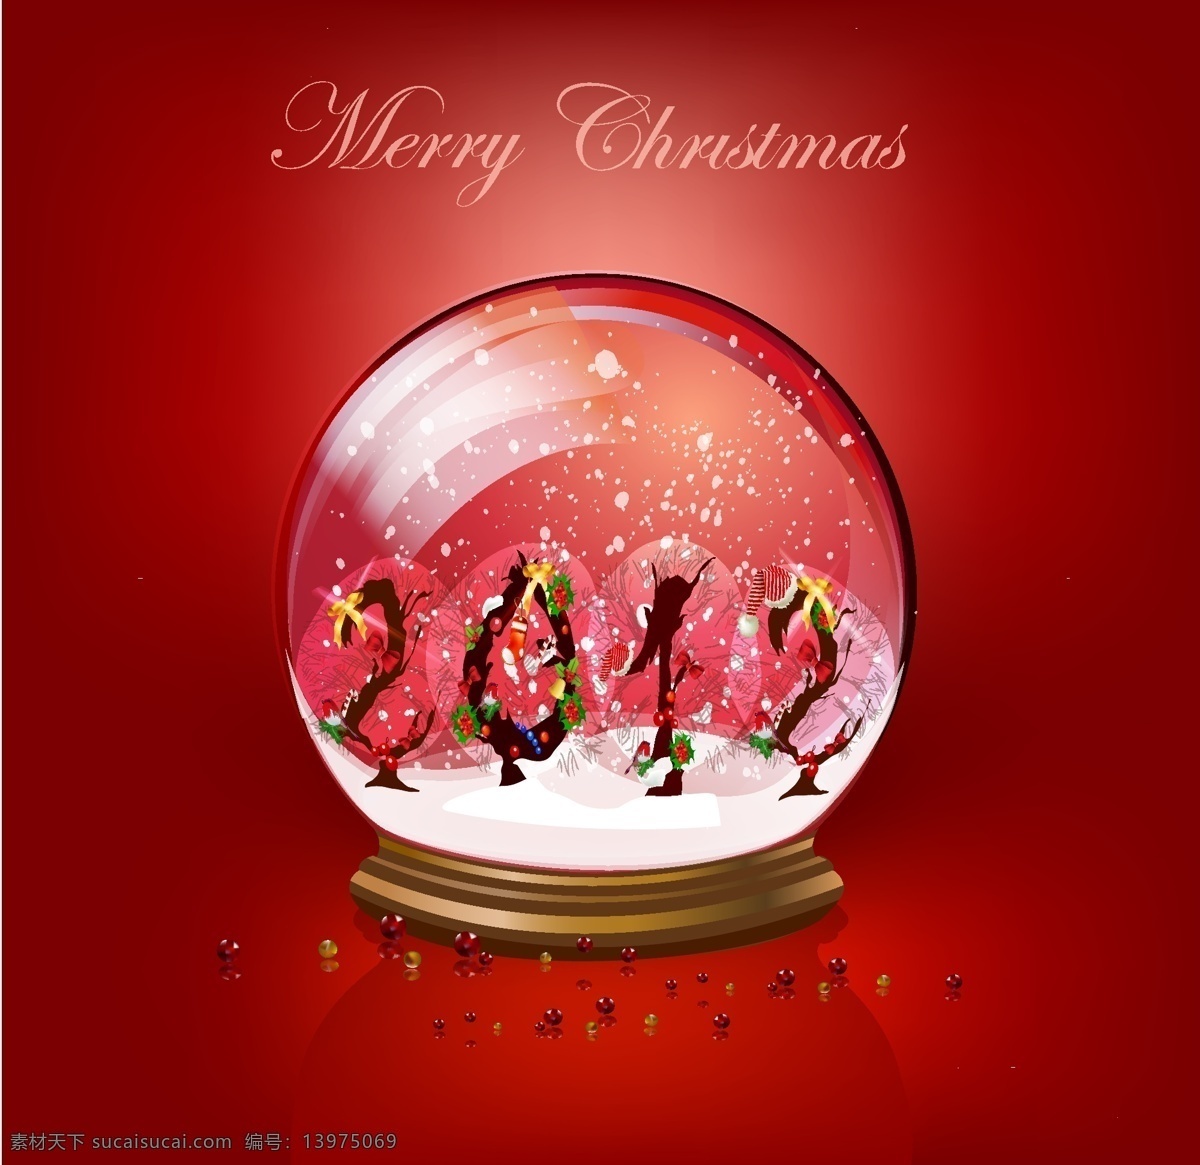 矢量 圣诞节 玻璃 水球 饰品 圣诞节饰品 雪人 玻璃水球 玻璃珠 水晶球 节日素材